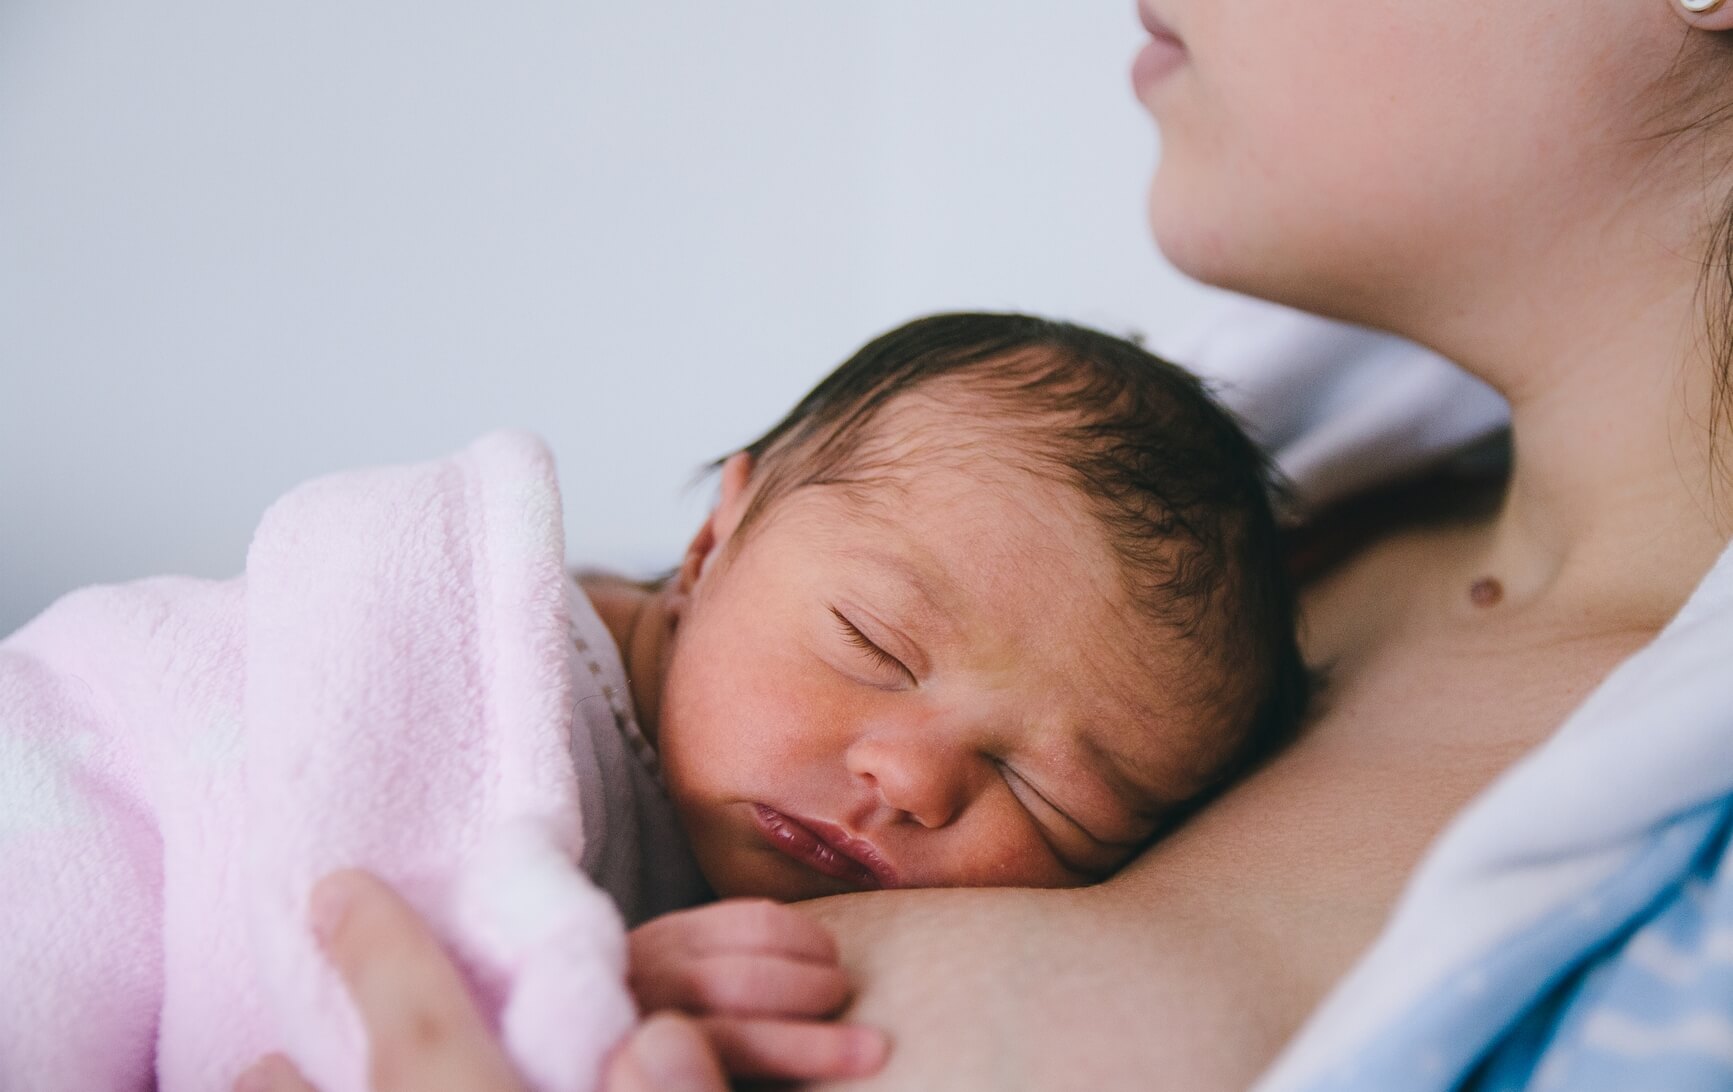 Familiares: no cojáis al bebé antes que la mamá tras el parto